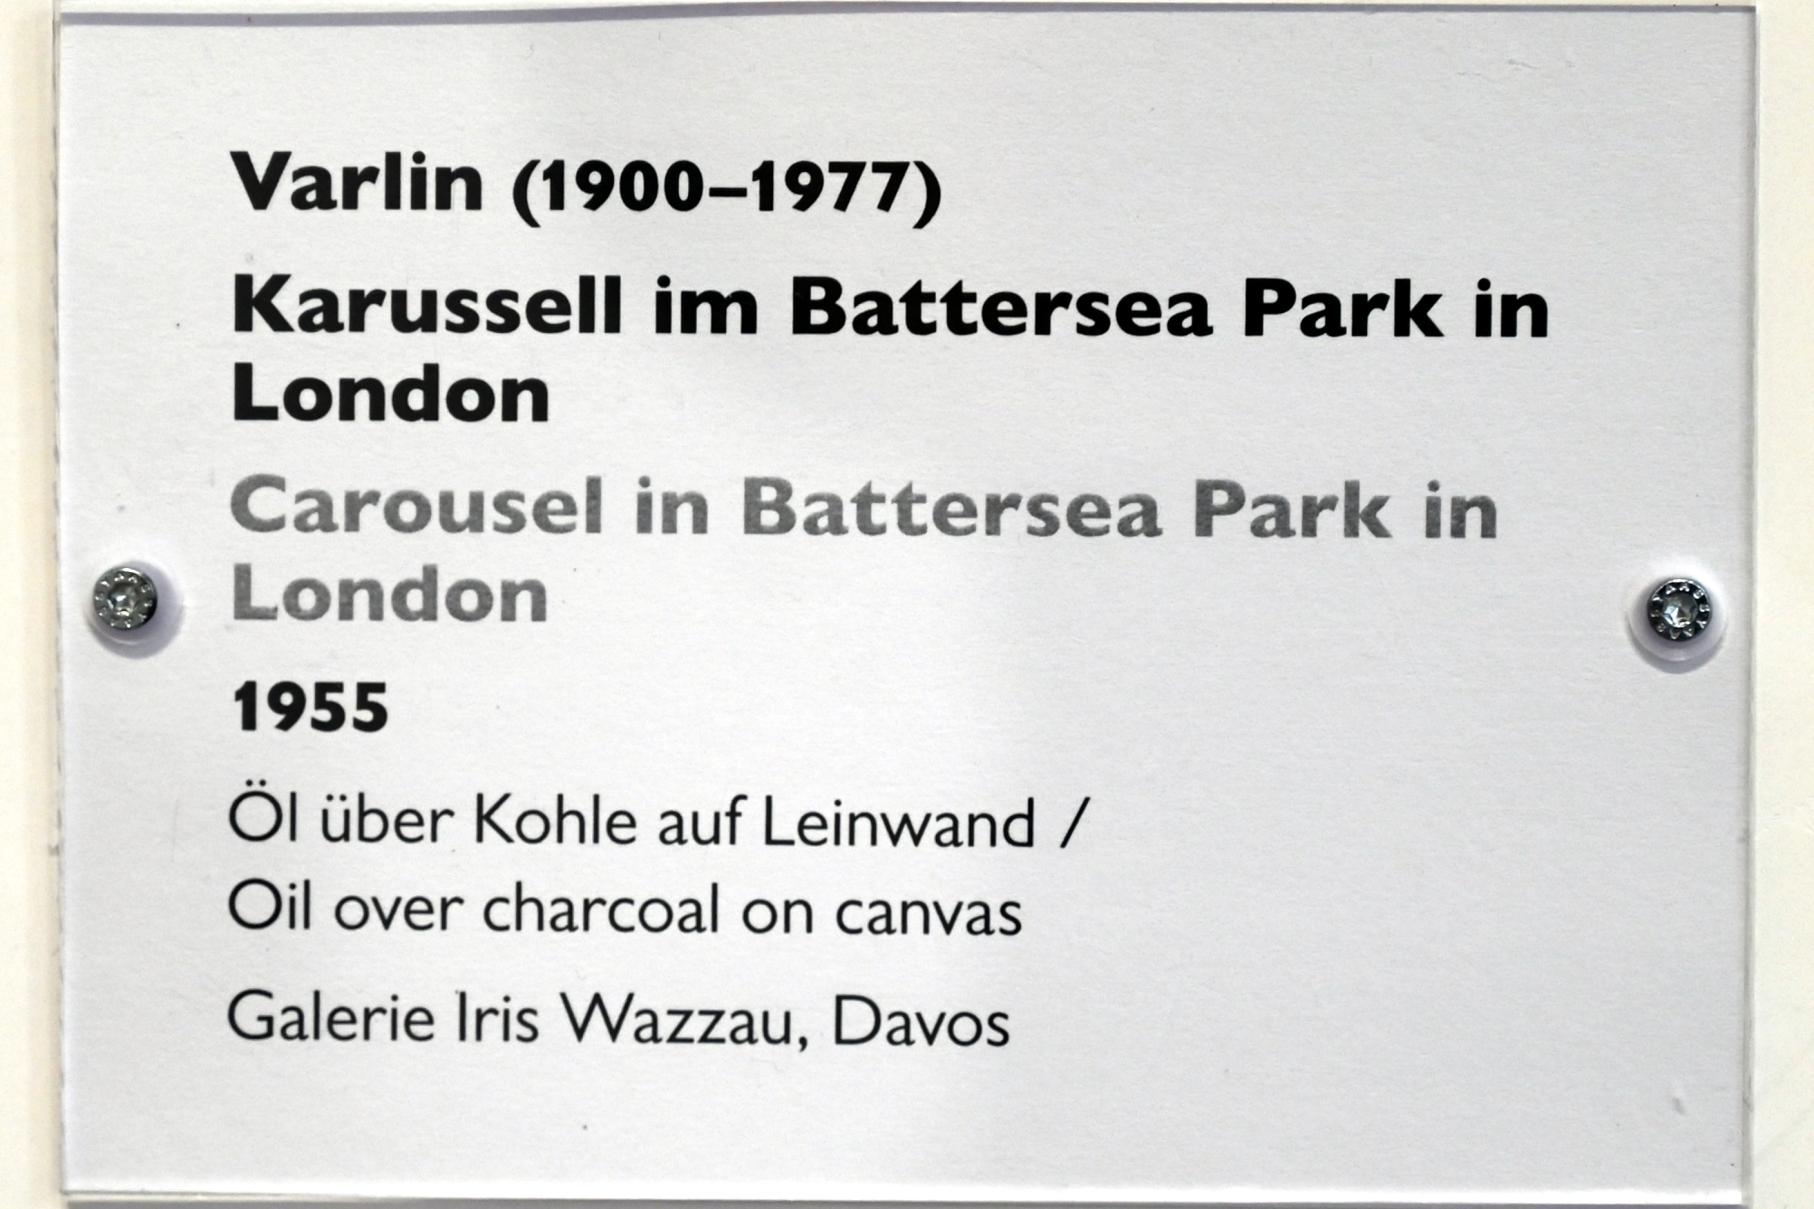 Willy Guggenheim (Varlin) (1955), Karussell im Battersea Park in London, Schwäbisch Hall, Kunsthalle Würth, Ausstellung "Sport, Spaß und Spiel" vom 13.12.2021 - 26.02.2023, Untergeschoß, 1955, Bild 2/2